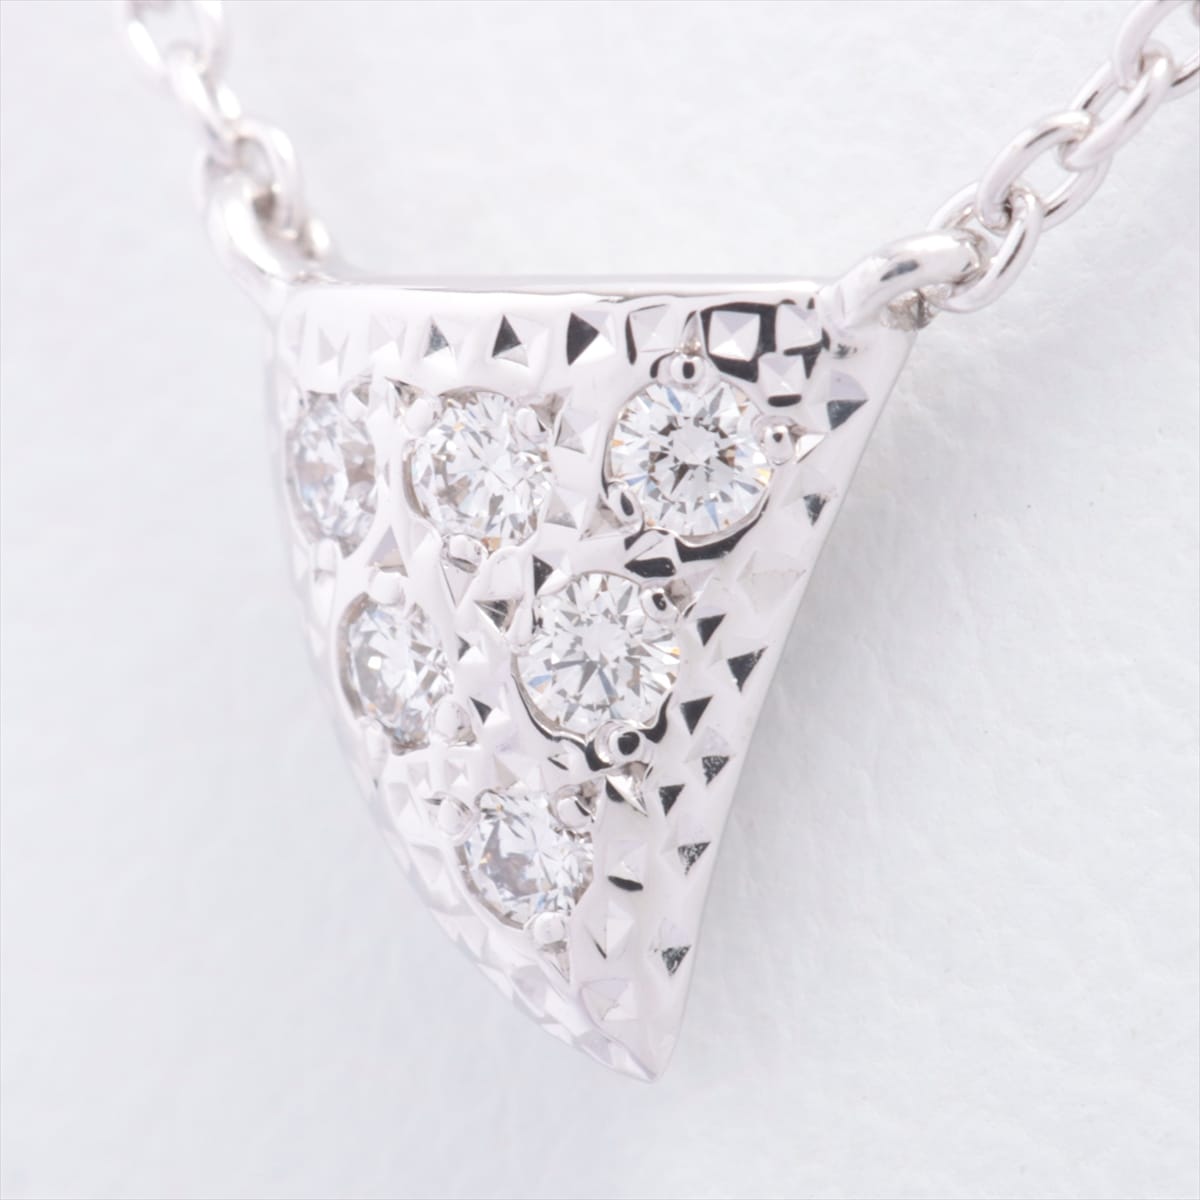 TASAKI TASAKI Thorns diamond Necklace 750WG 0.05